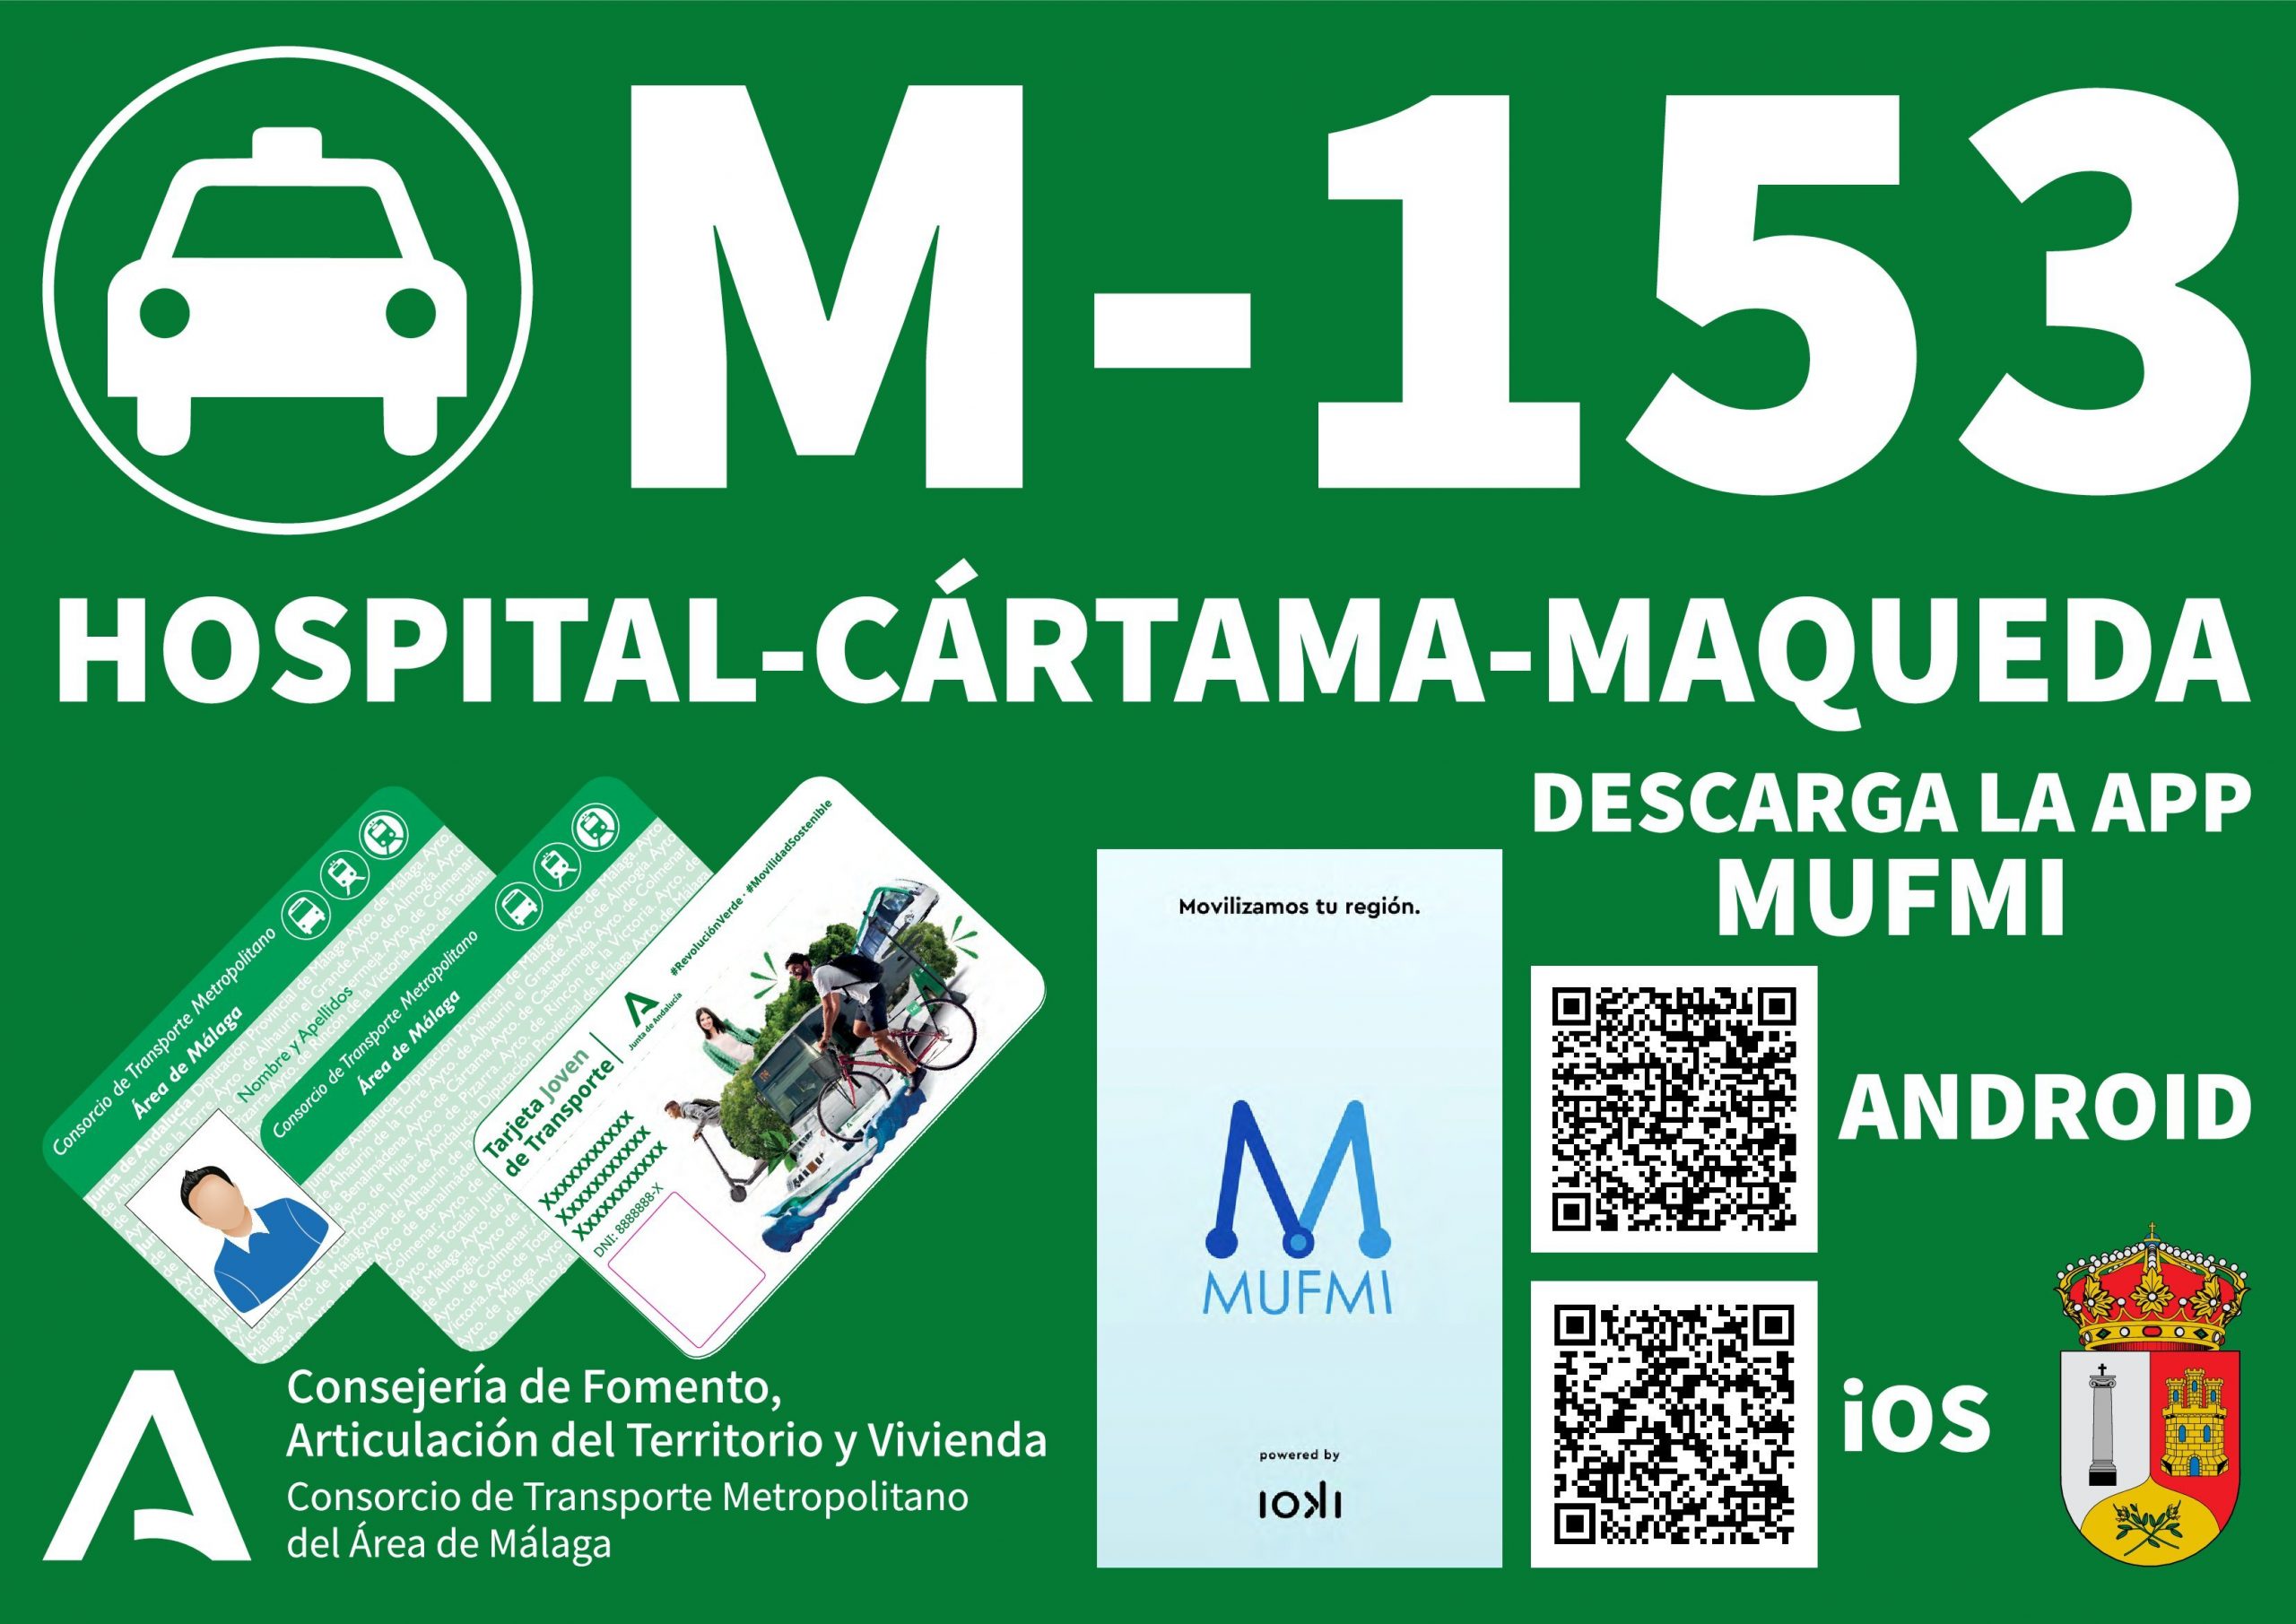 Servicio mejorado de la M-153 Hospital-Cártama-Maqueda desde el 3 de junio